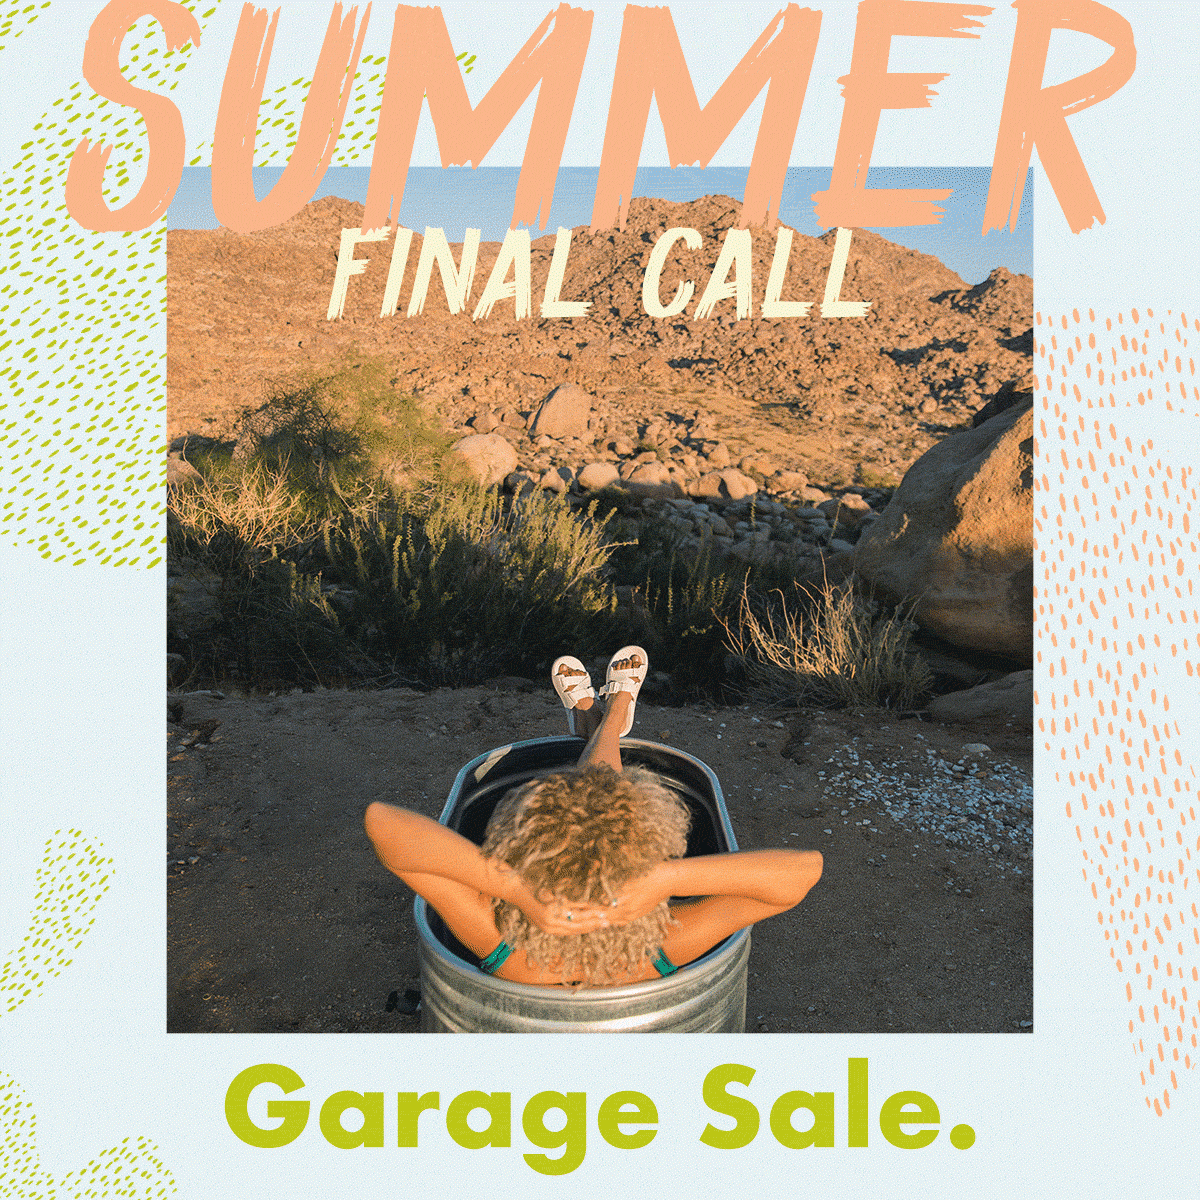 SUMMER Garage Sale – Final Call